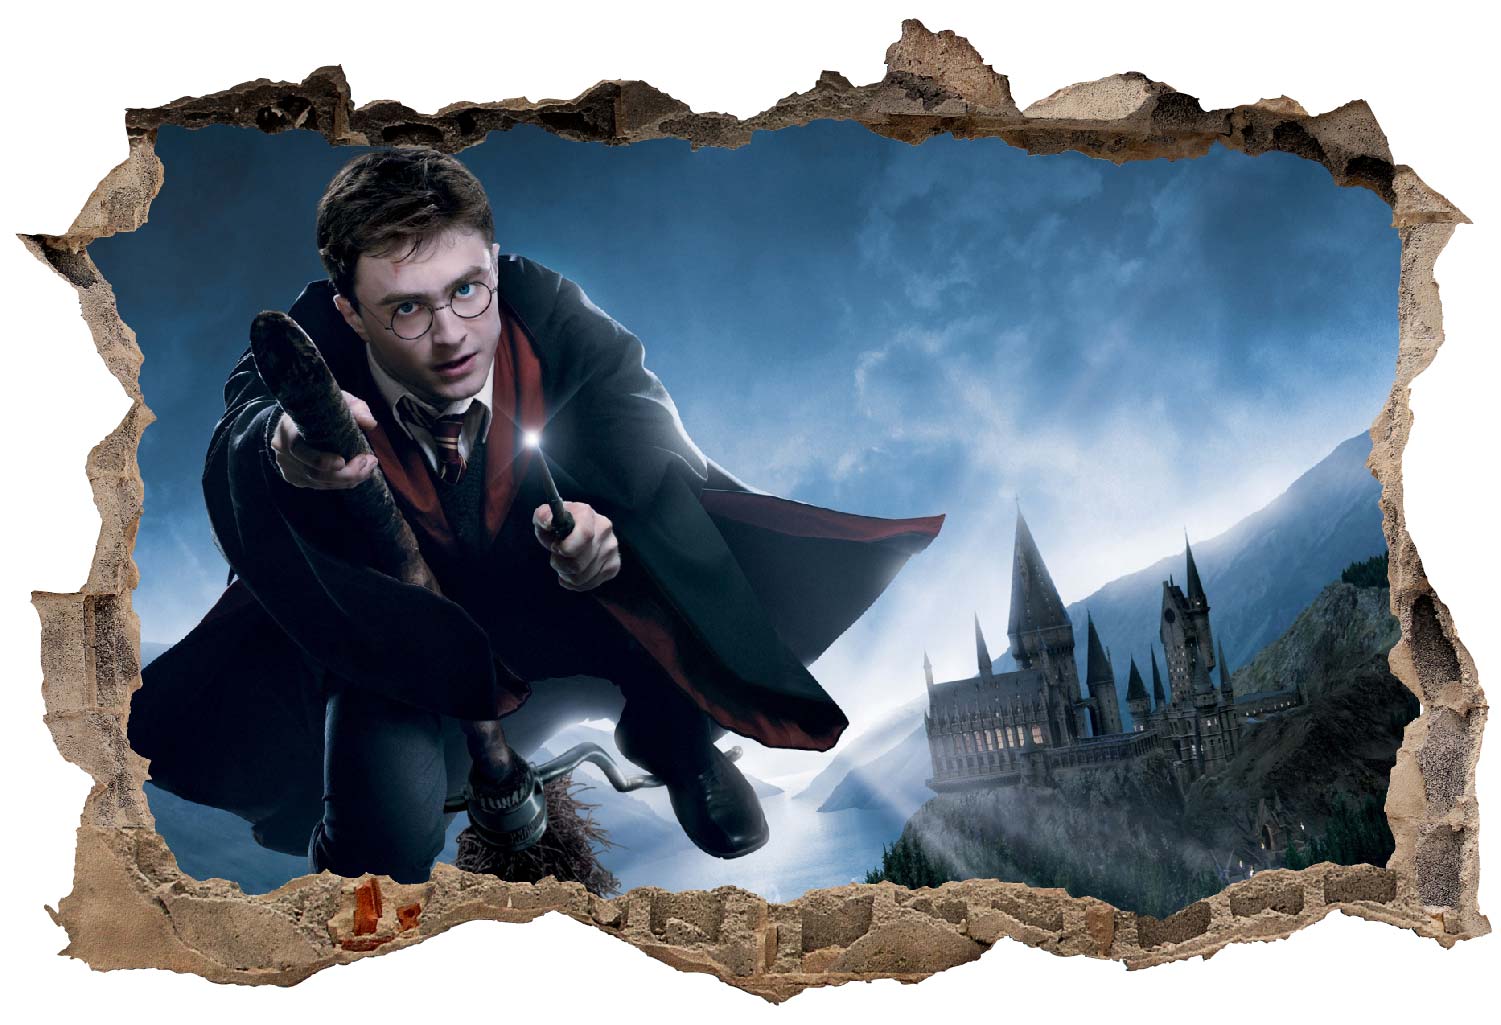 Livre d'autocollants Harry Potter ™ Tuck-Front Autocollant Harry